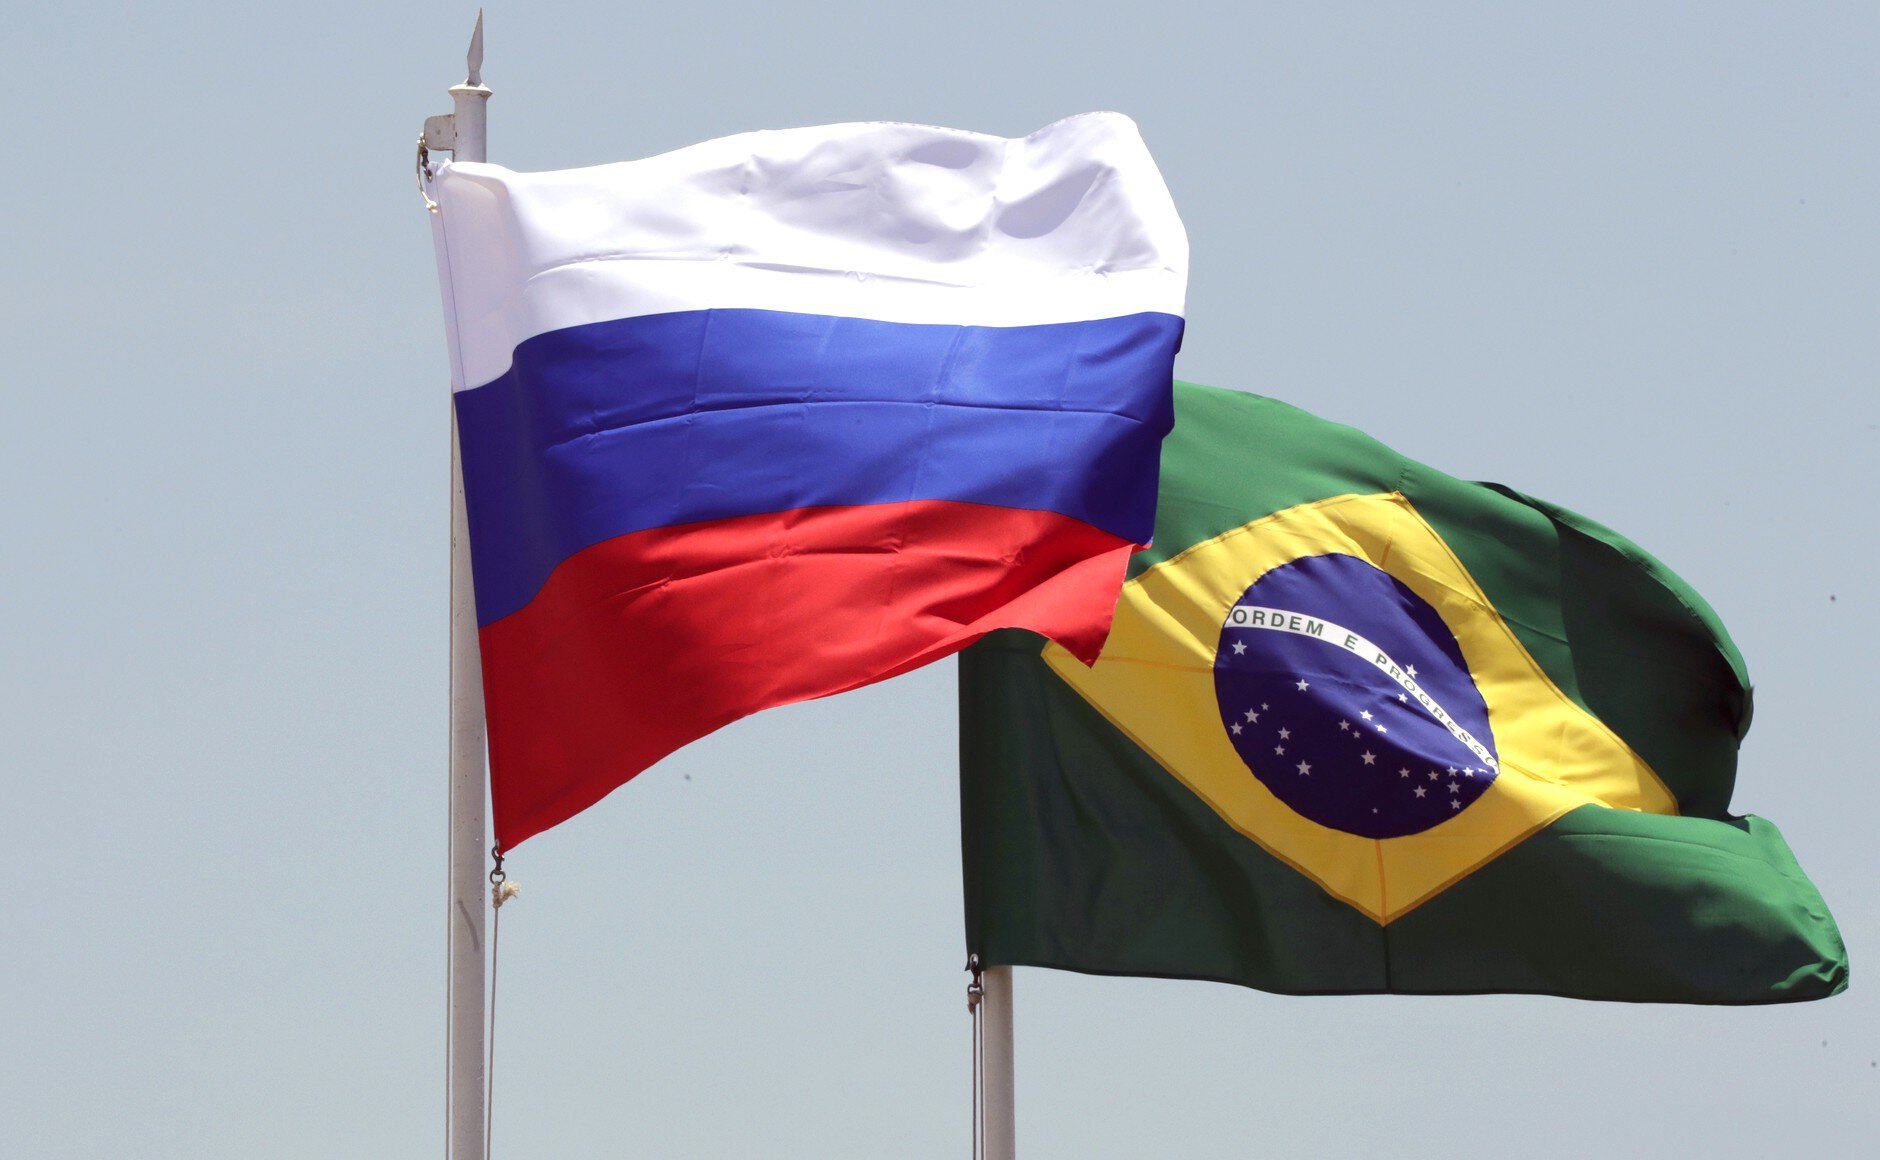 Ари: Бразильцы и россияне  братья. Лула поддерживает Путина. Бразилия точно согласилась бы сыграть с Россией